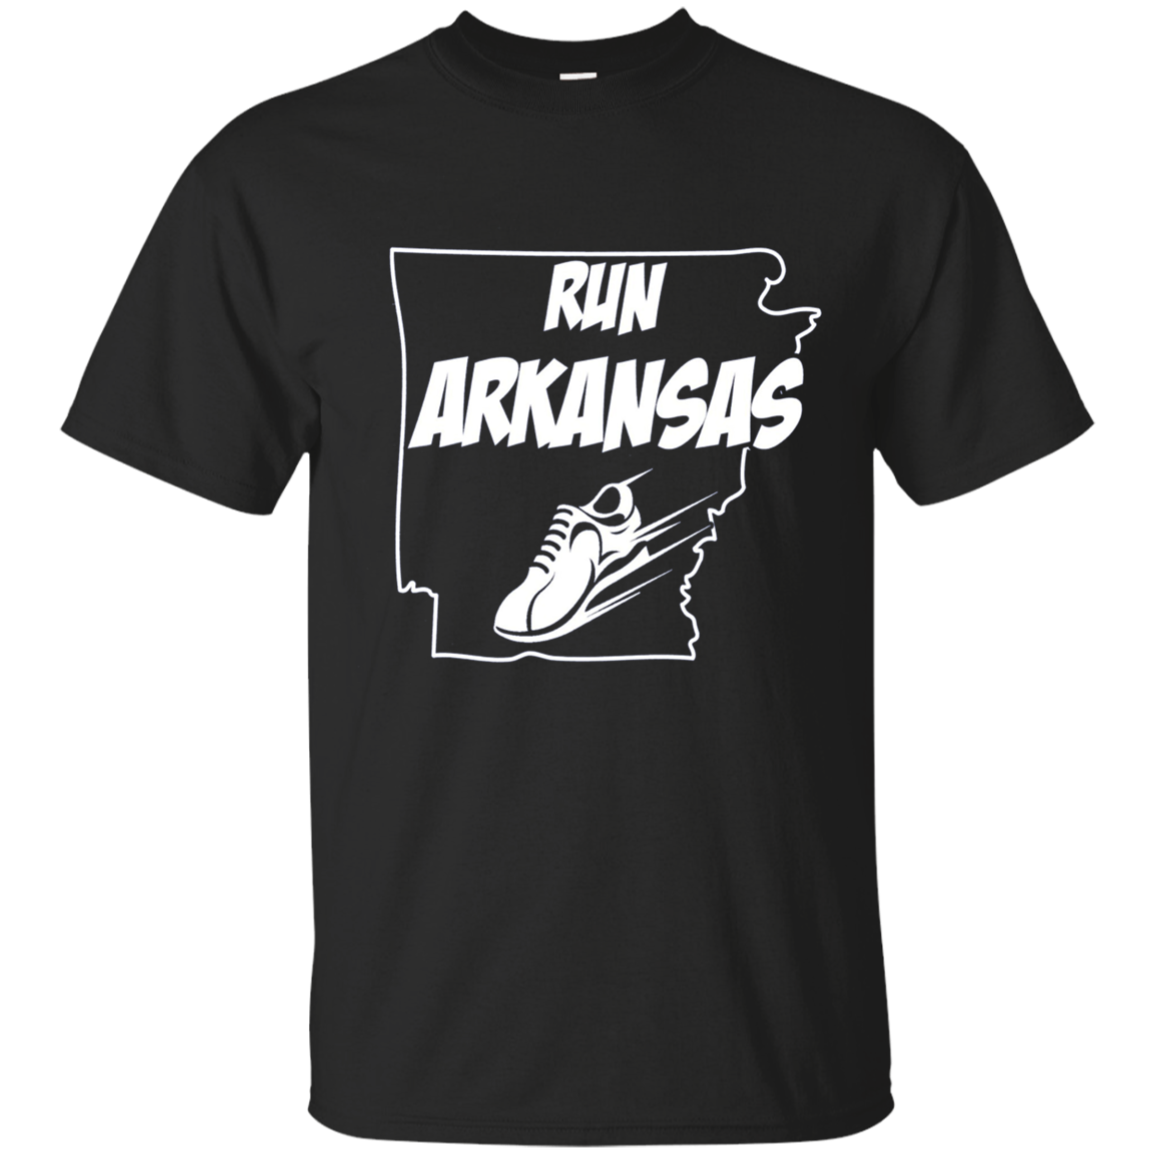 Running Shirt Run Arkansas Runners T-shirt